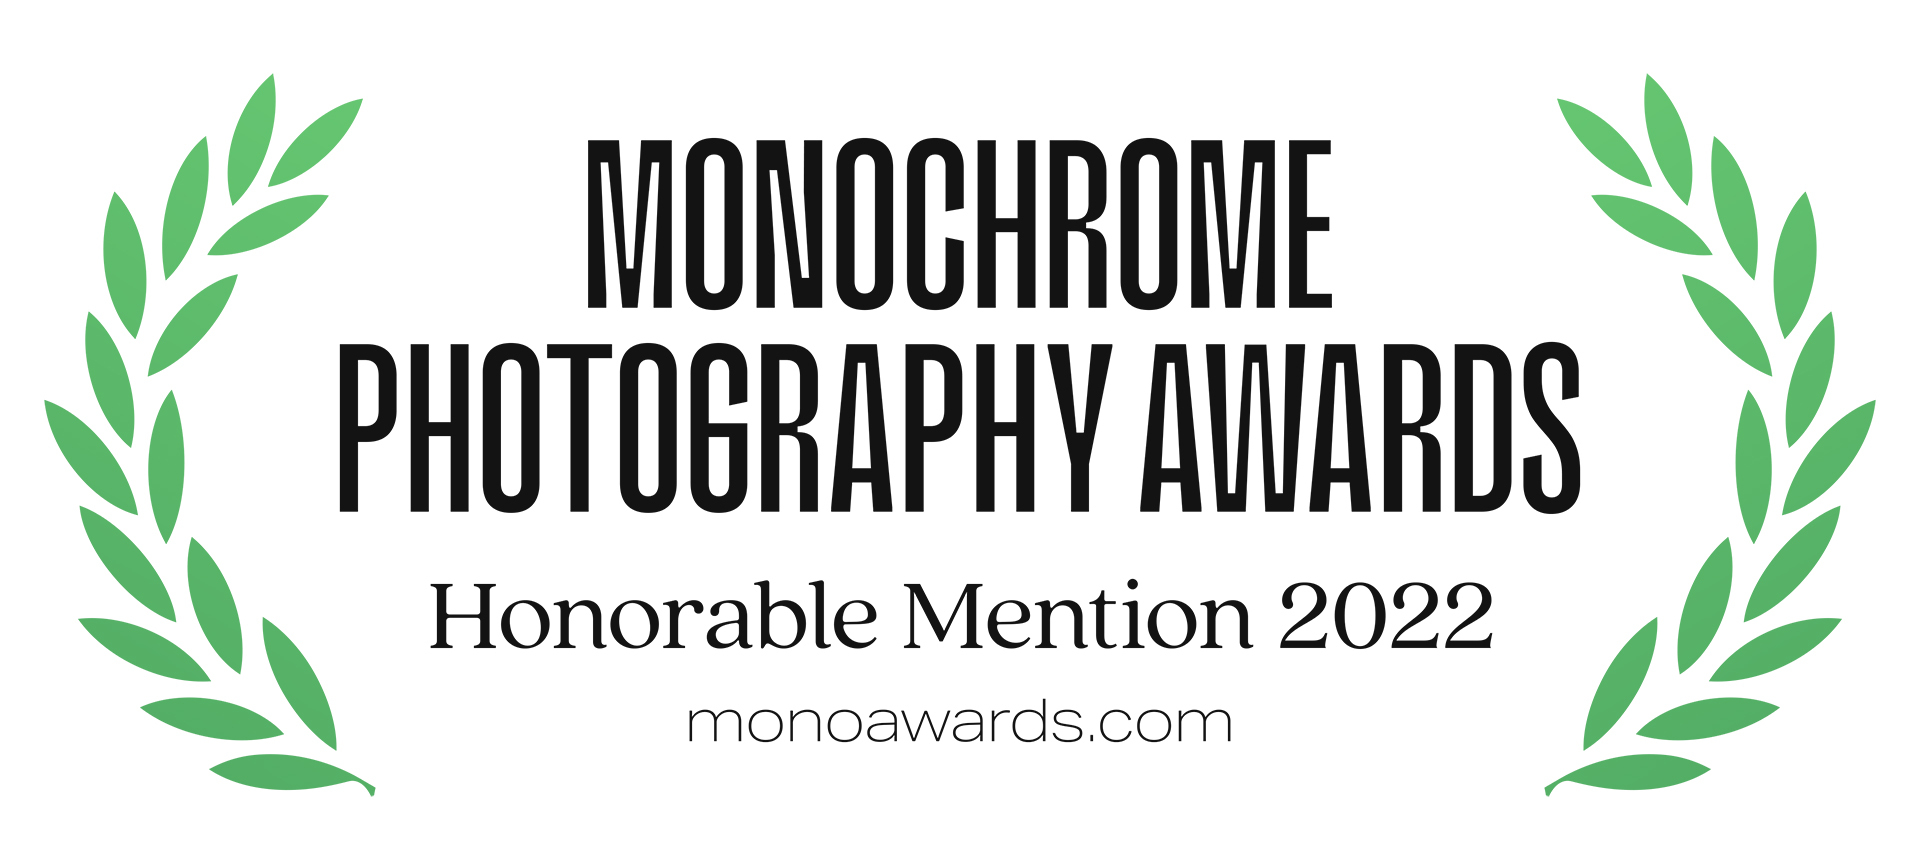 3 x Awarded Monochrome Awards 2022